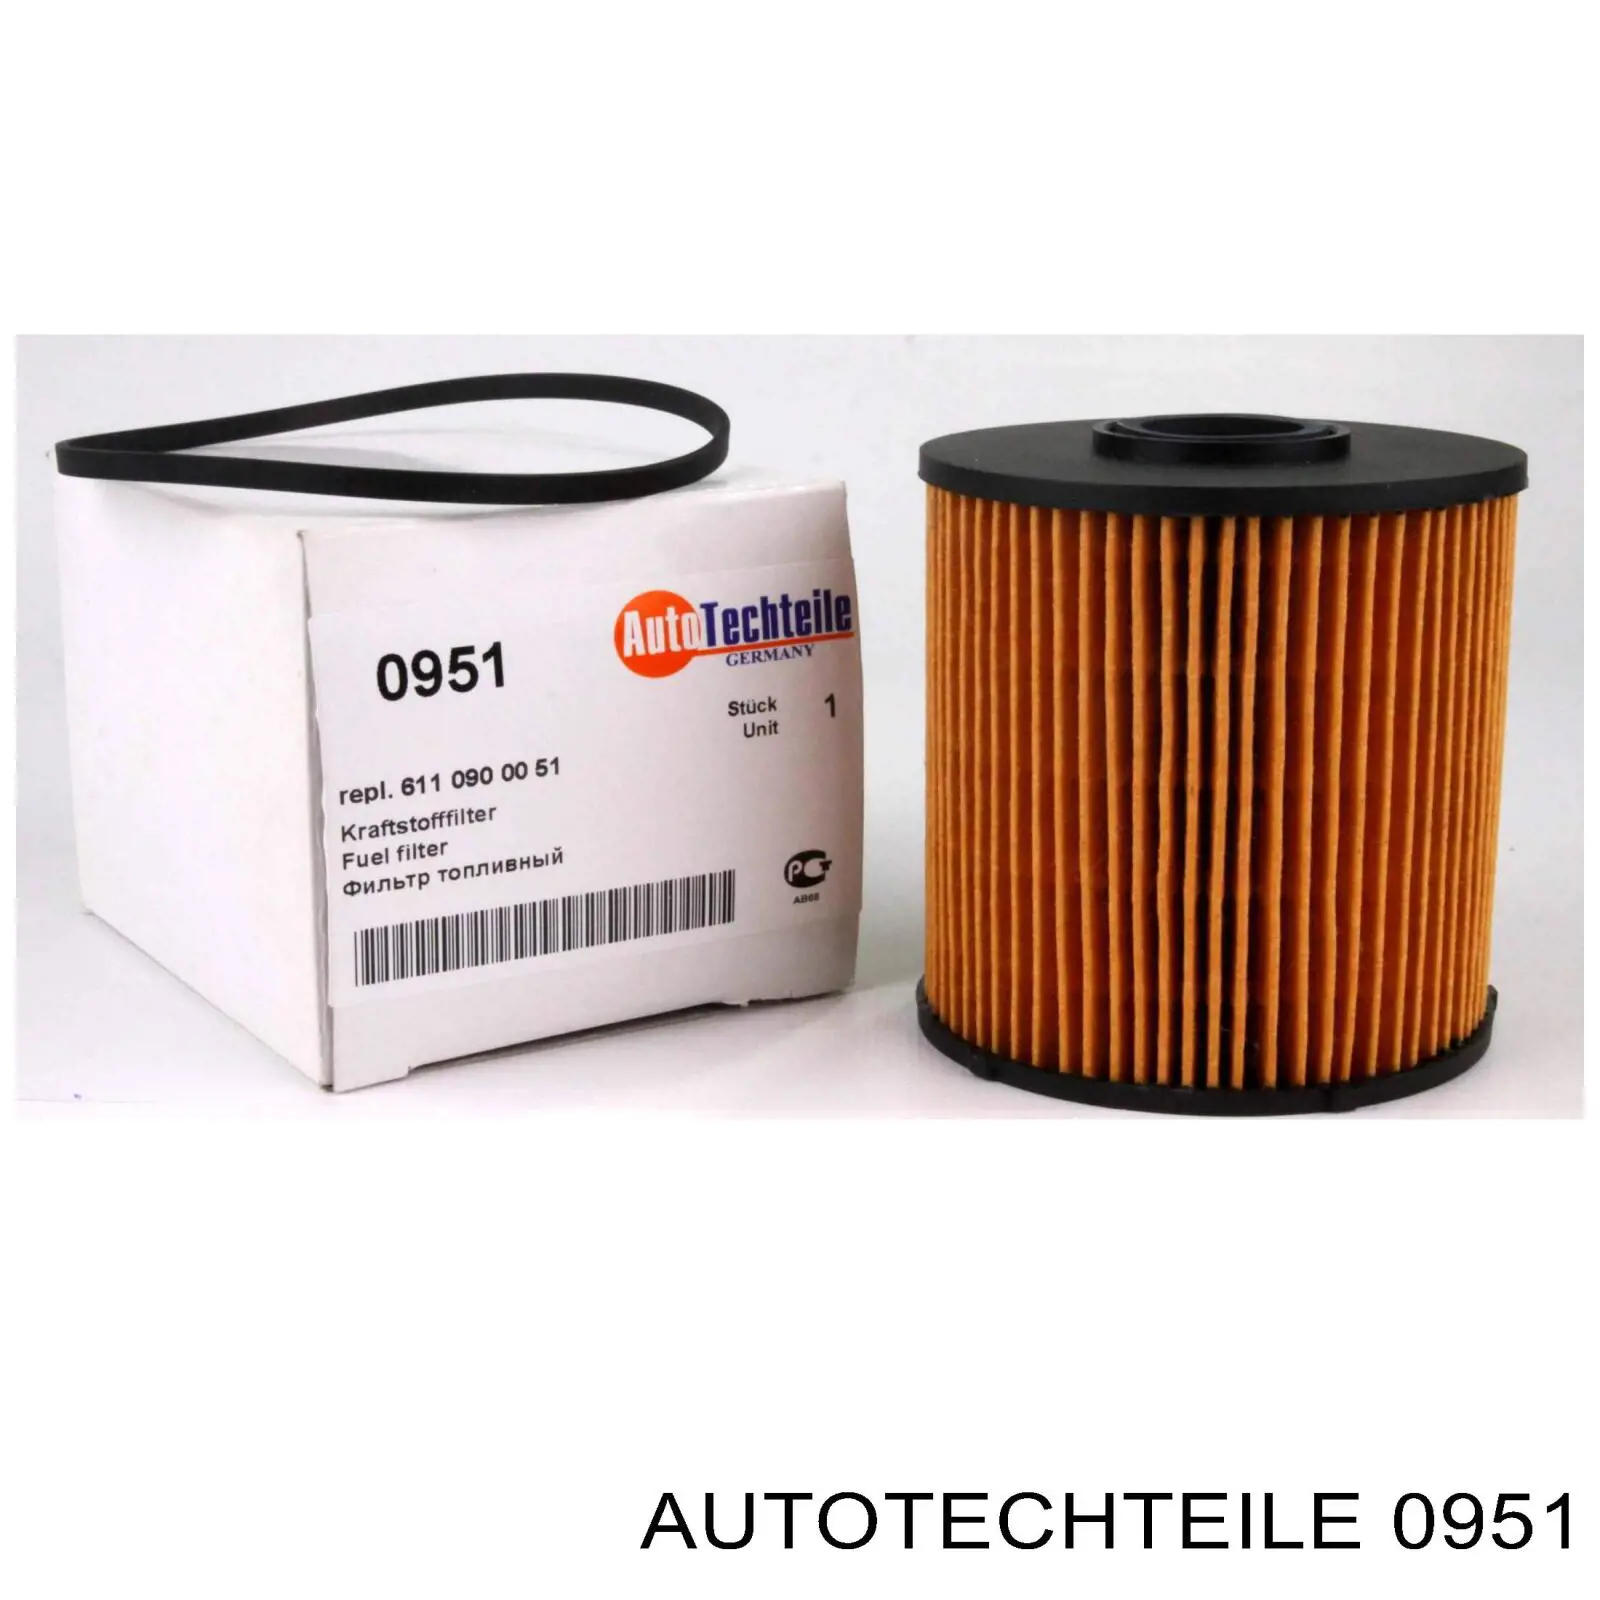 0951 Autotechteile топливный фильтр